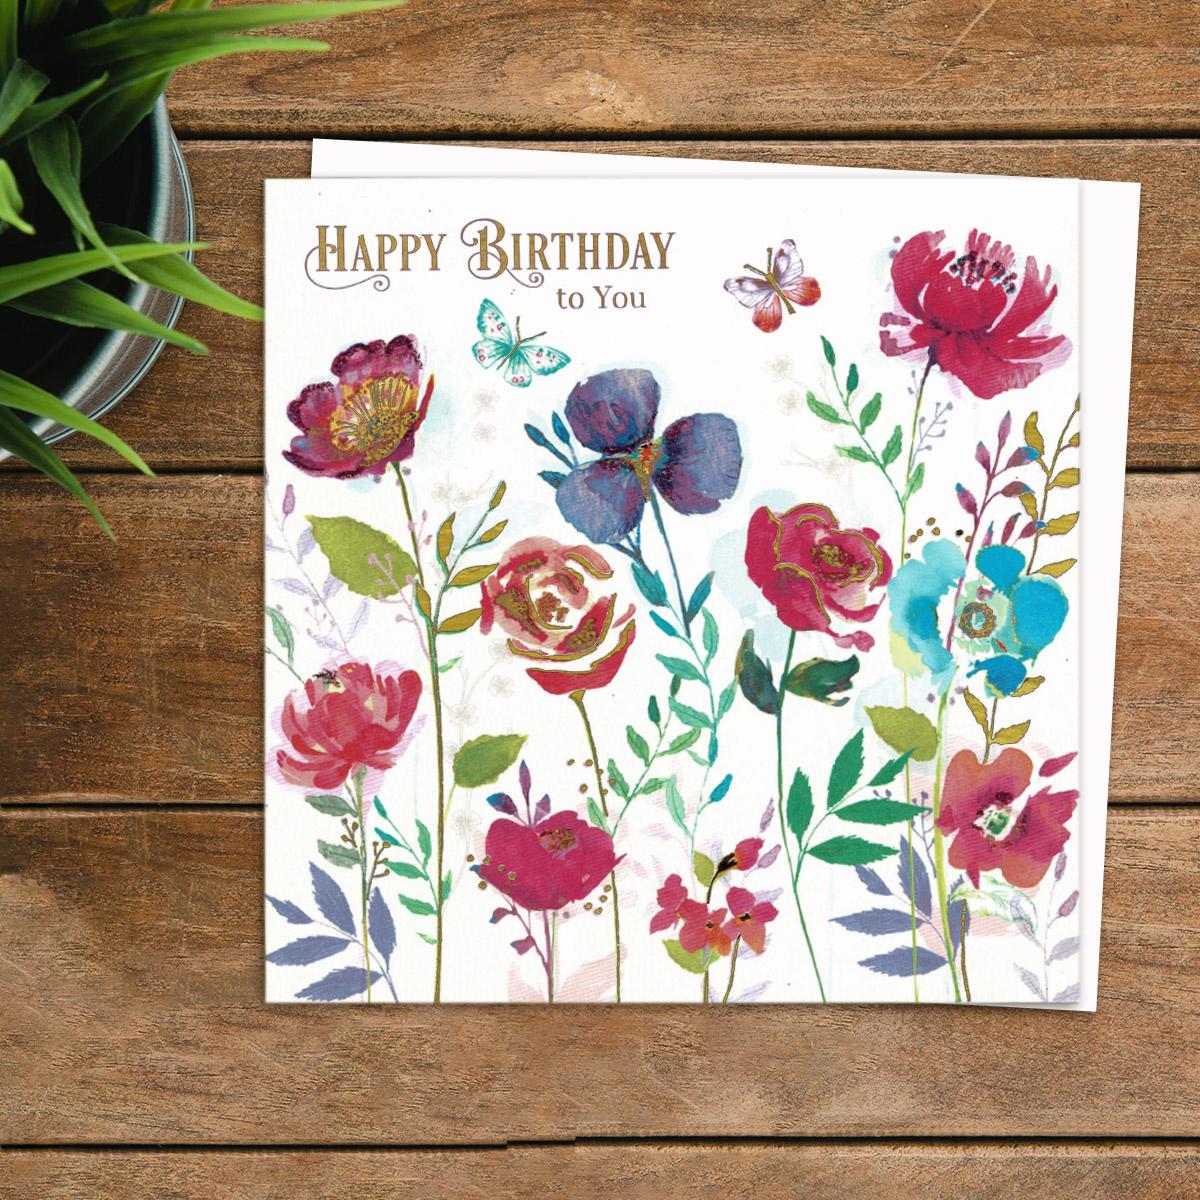 Damson Noire - Vibrant Flowers & Butterflies Card Front Image